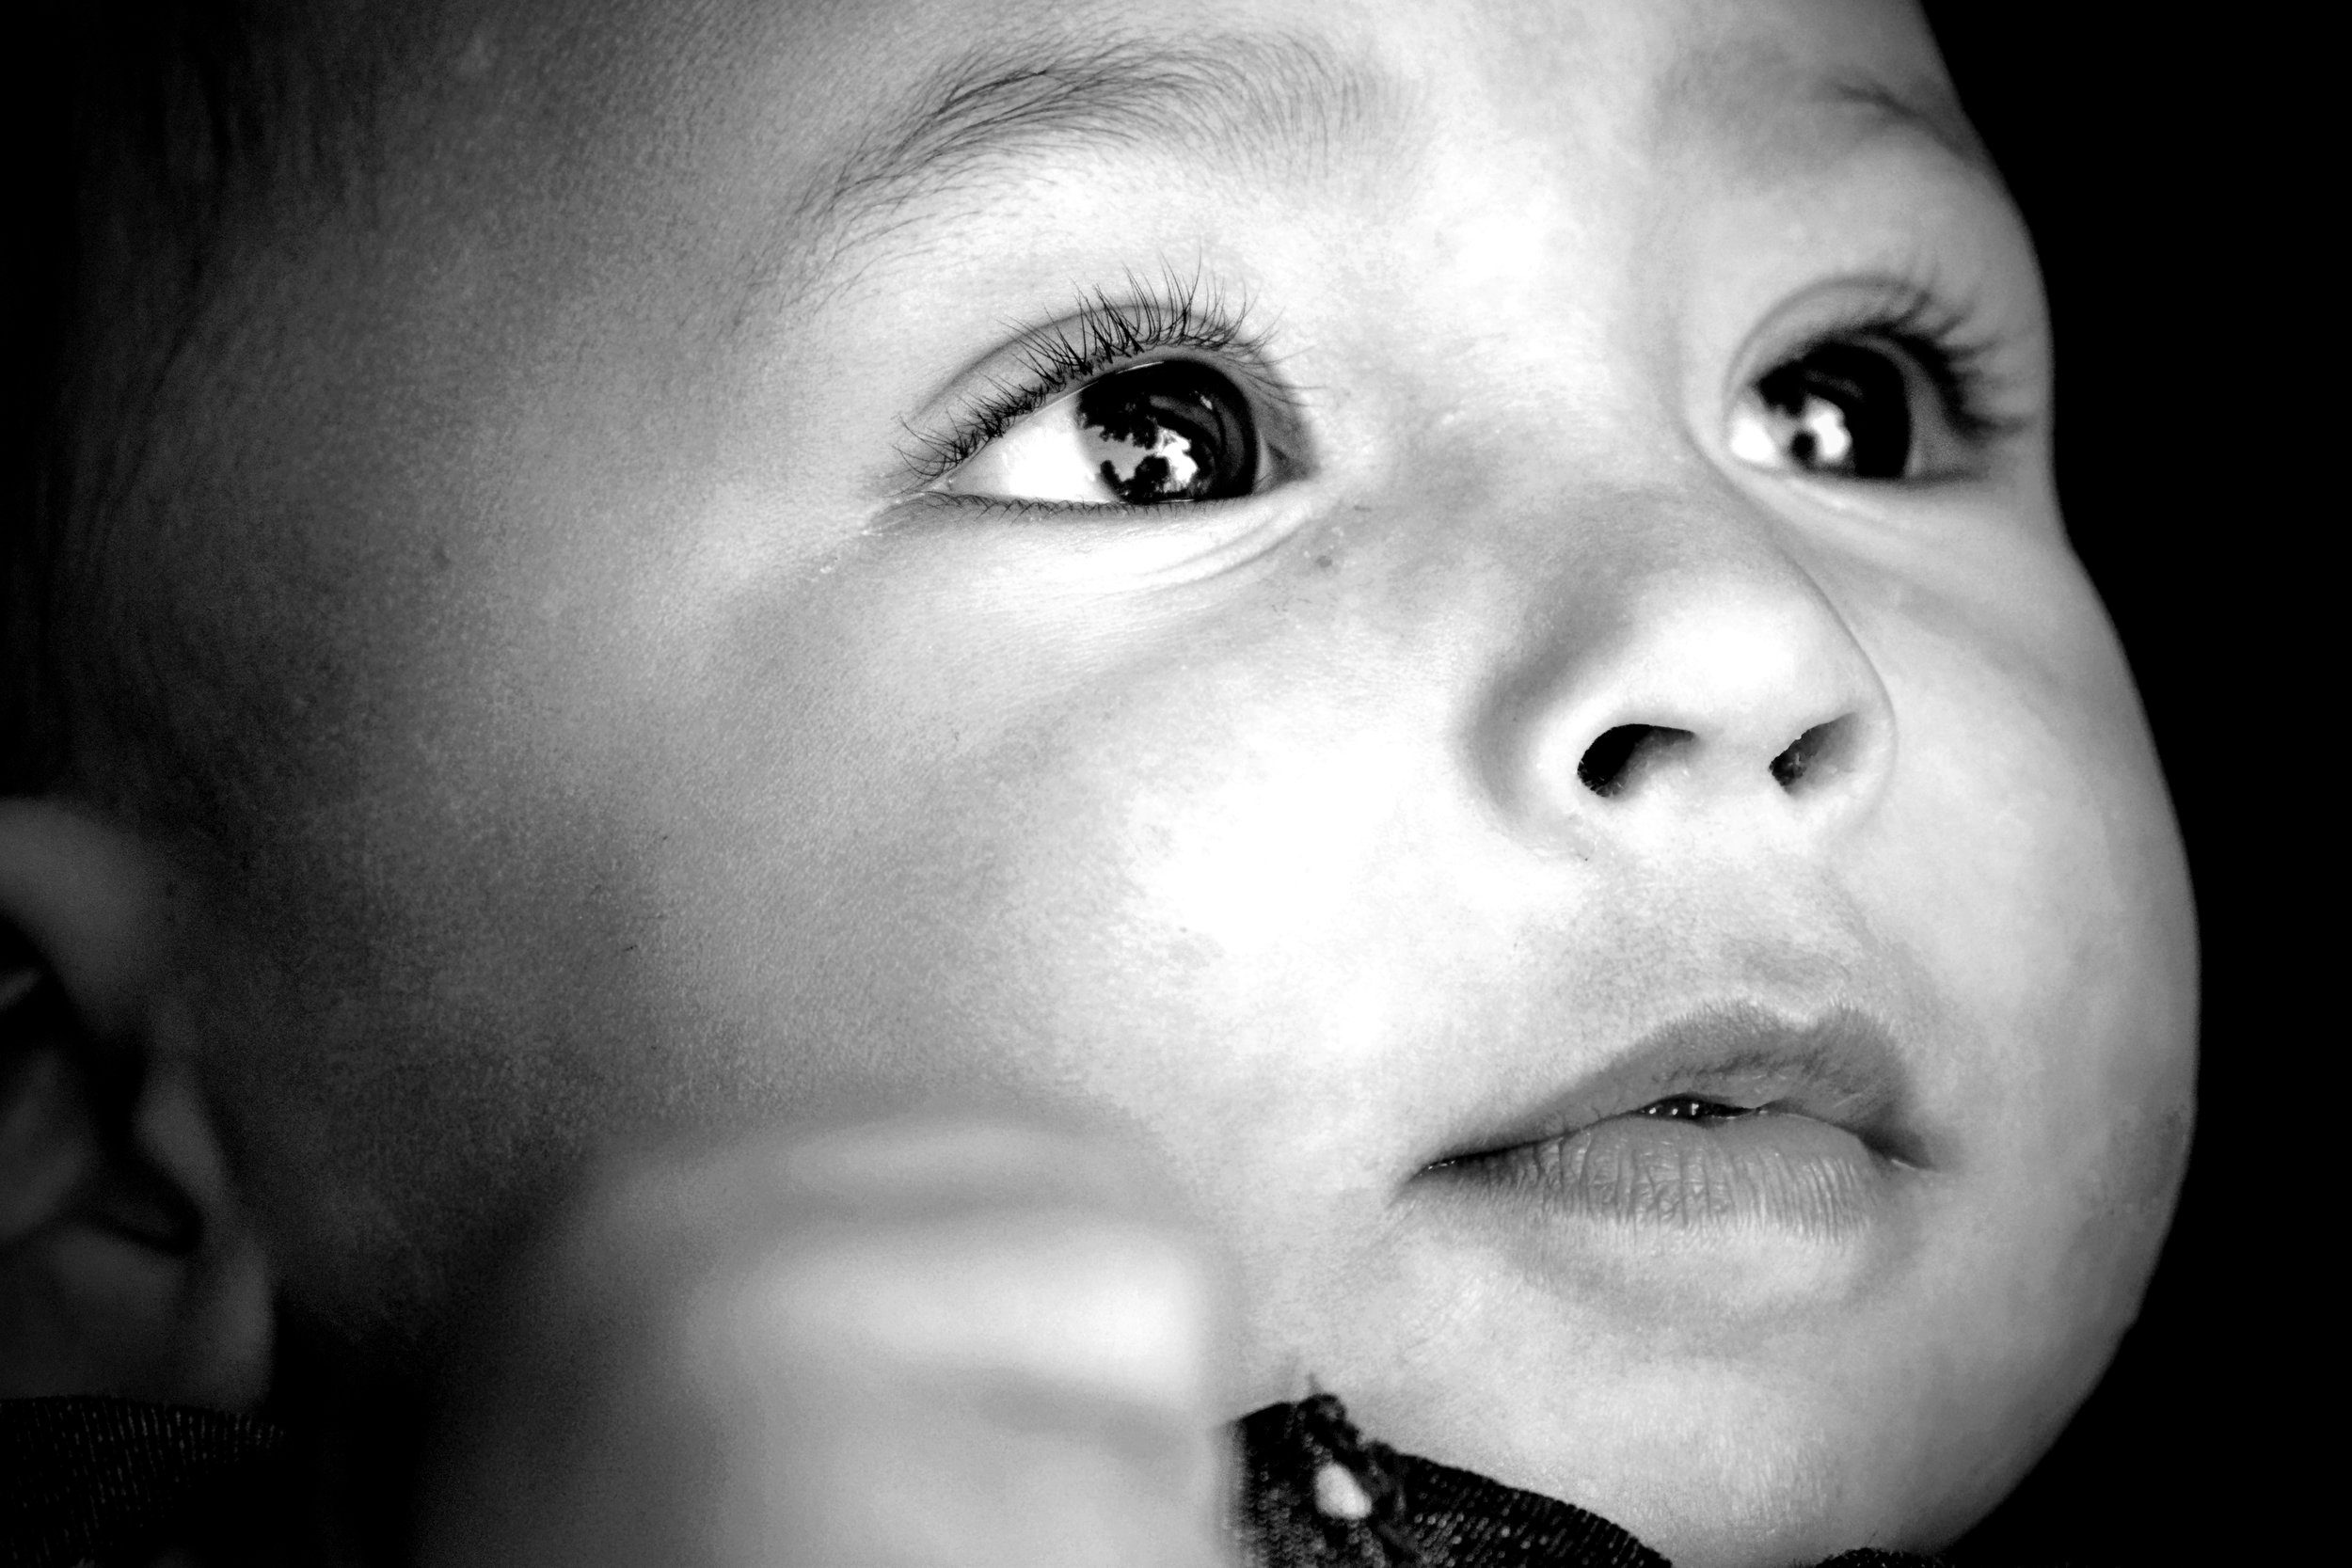  Infant Child Photography NYC, baby portrait, catholic photographer Connecticut 